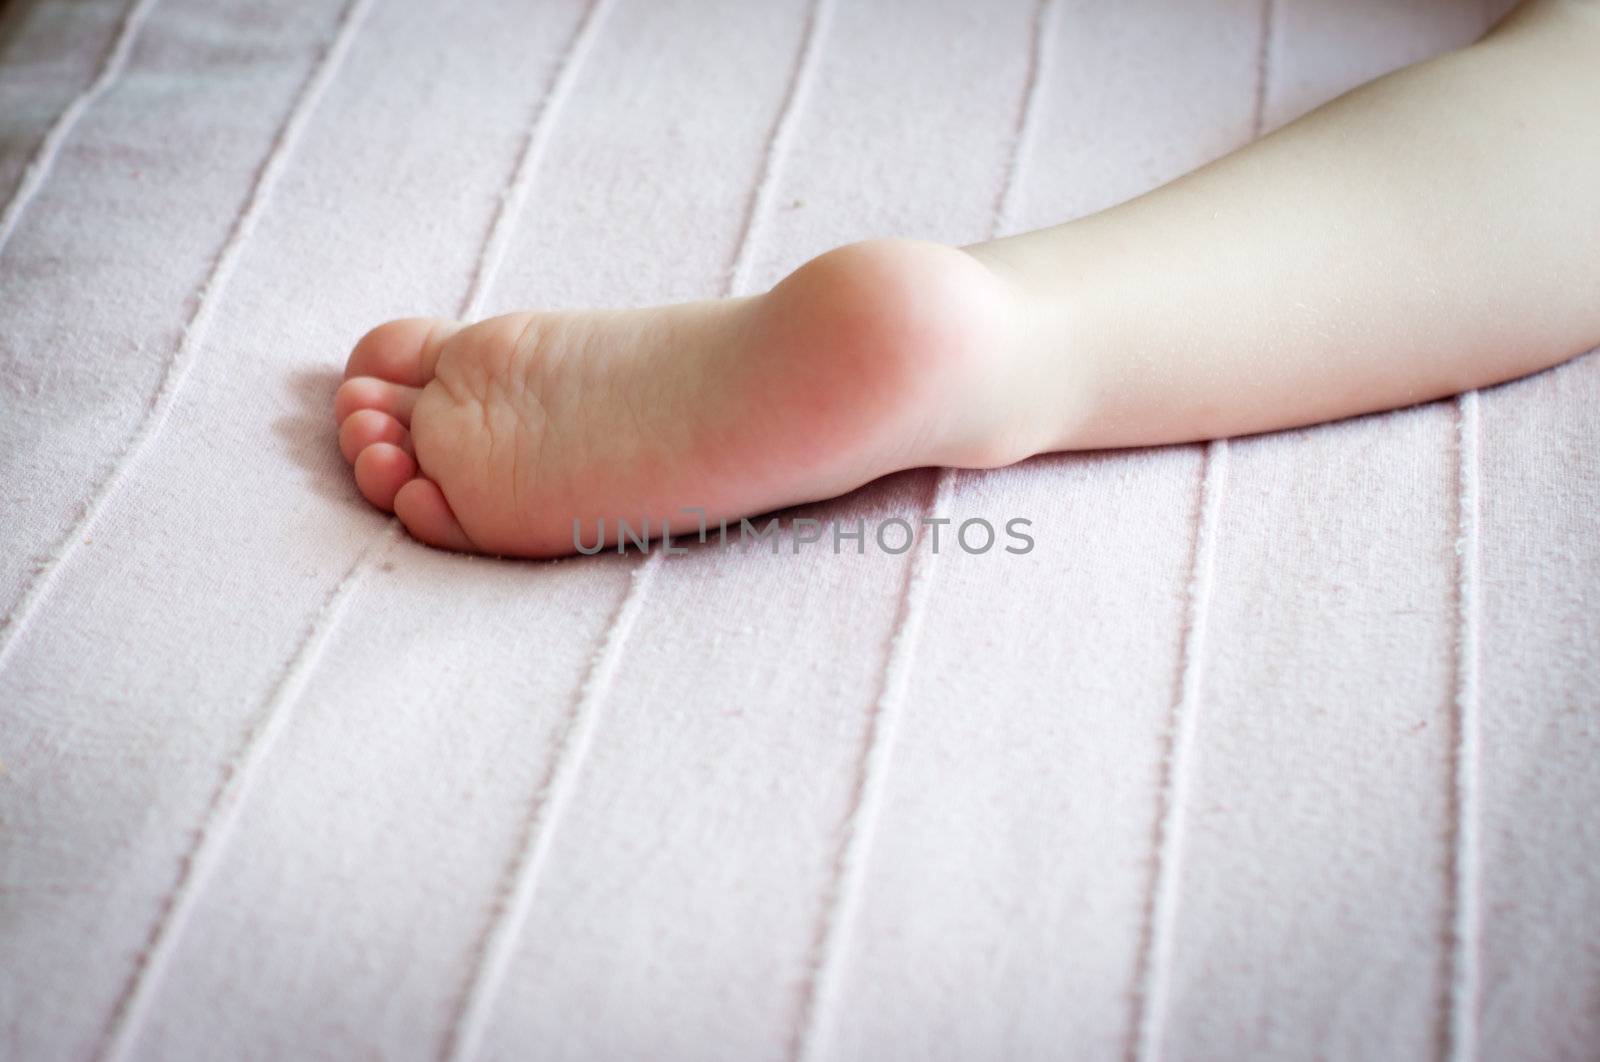 Children's foot by alena0509